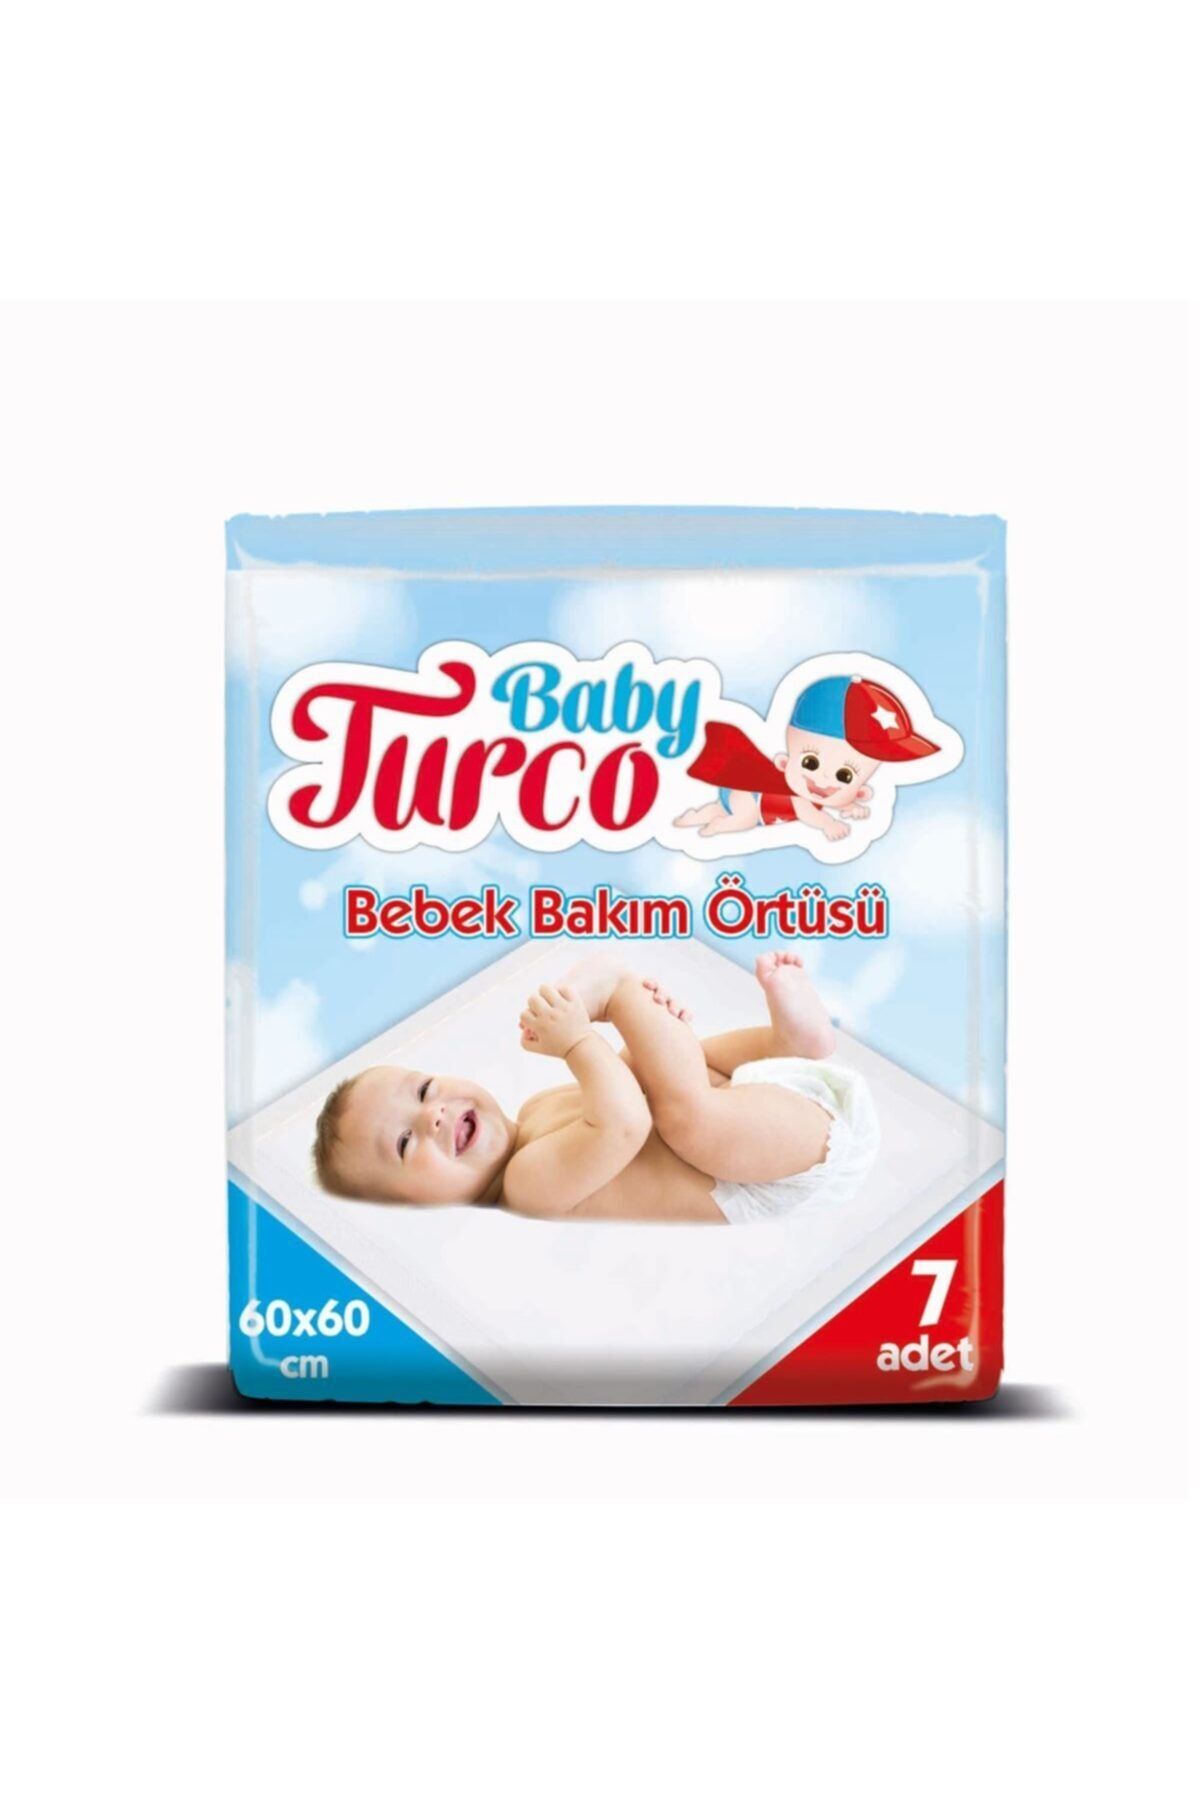 Baby Turco Bebek Bakım Örtüsü